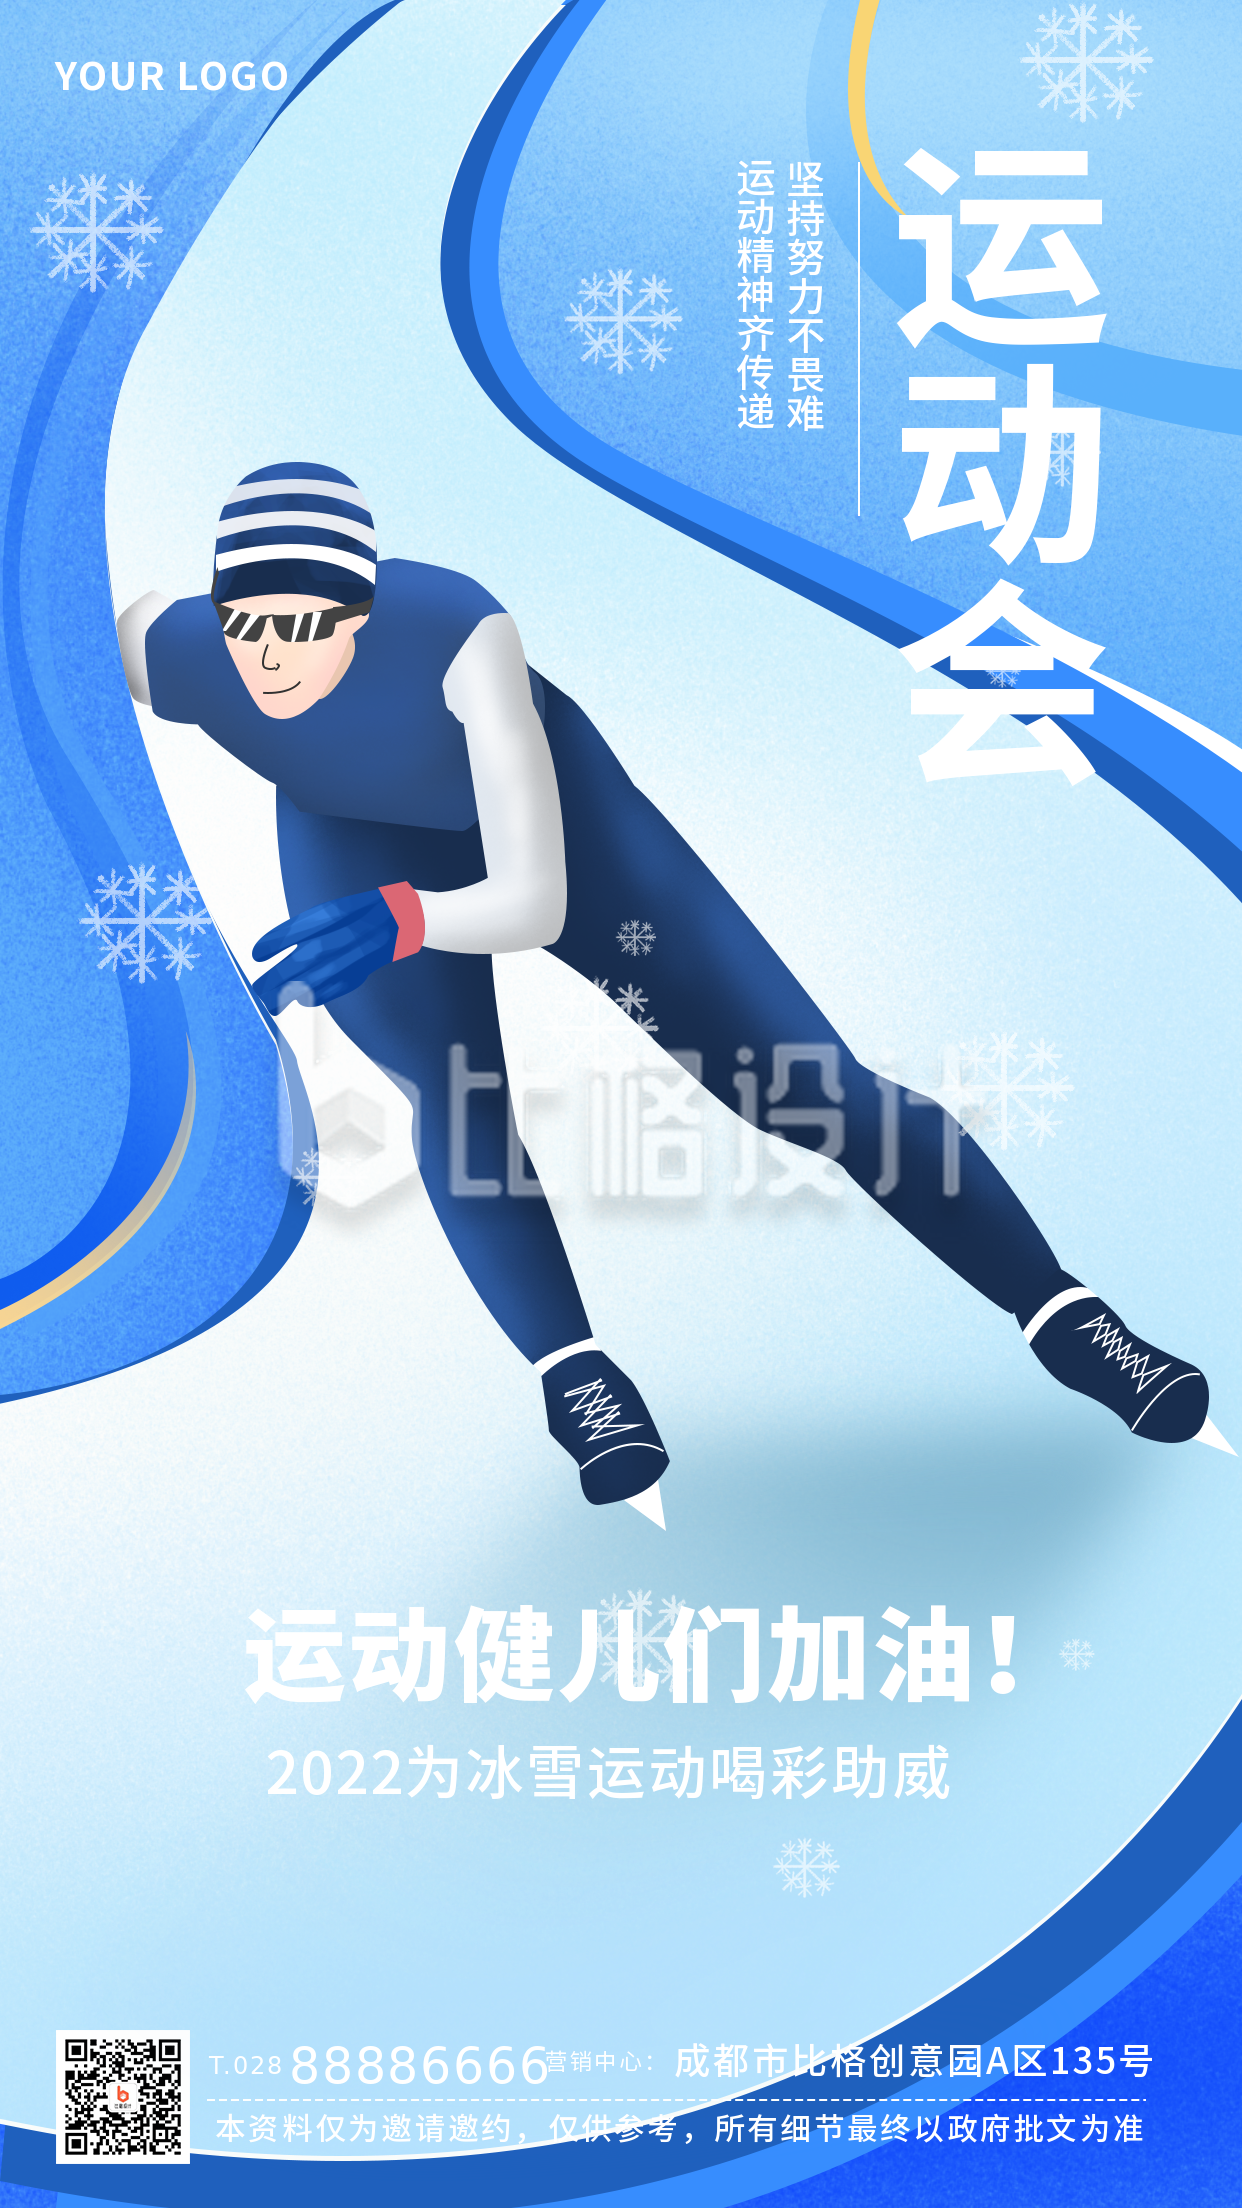 冬季运动会体育滑冰活动场景宣传手机海报